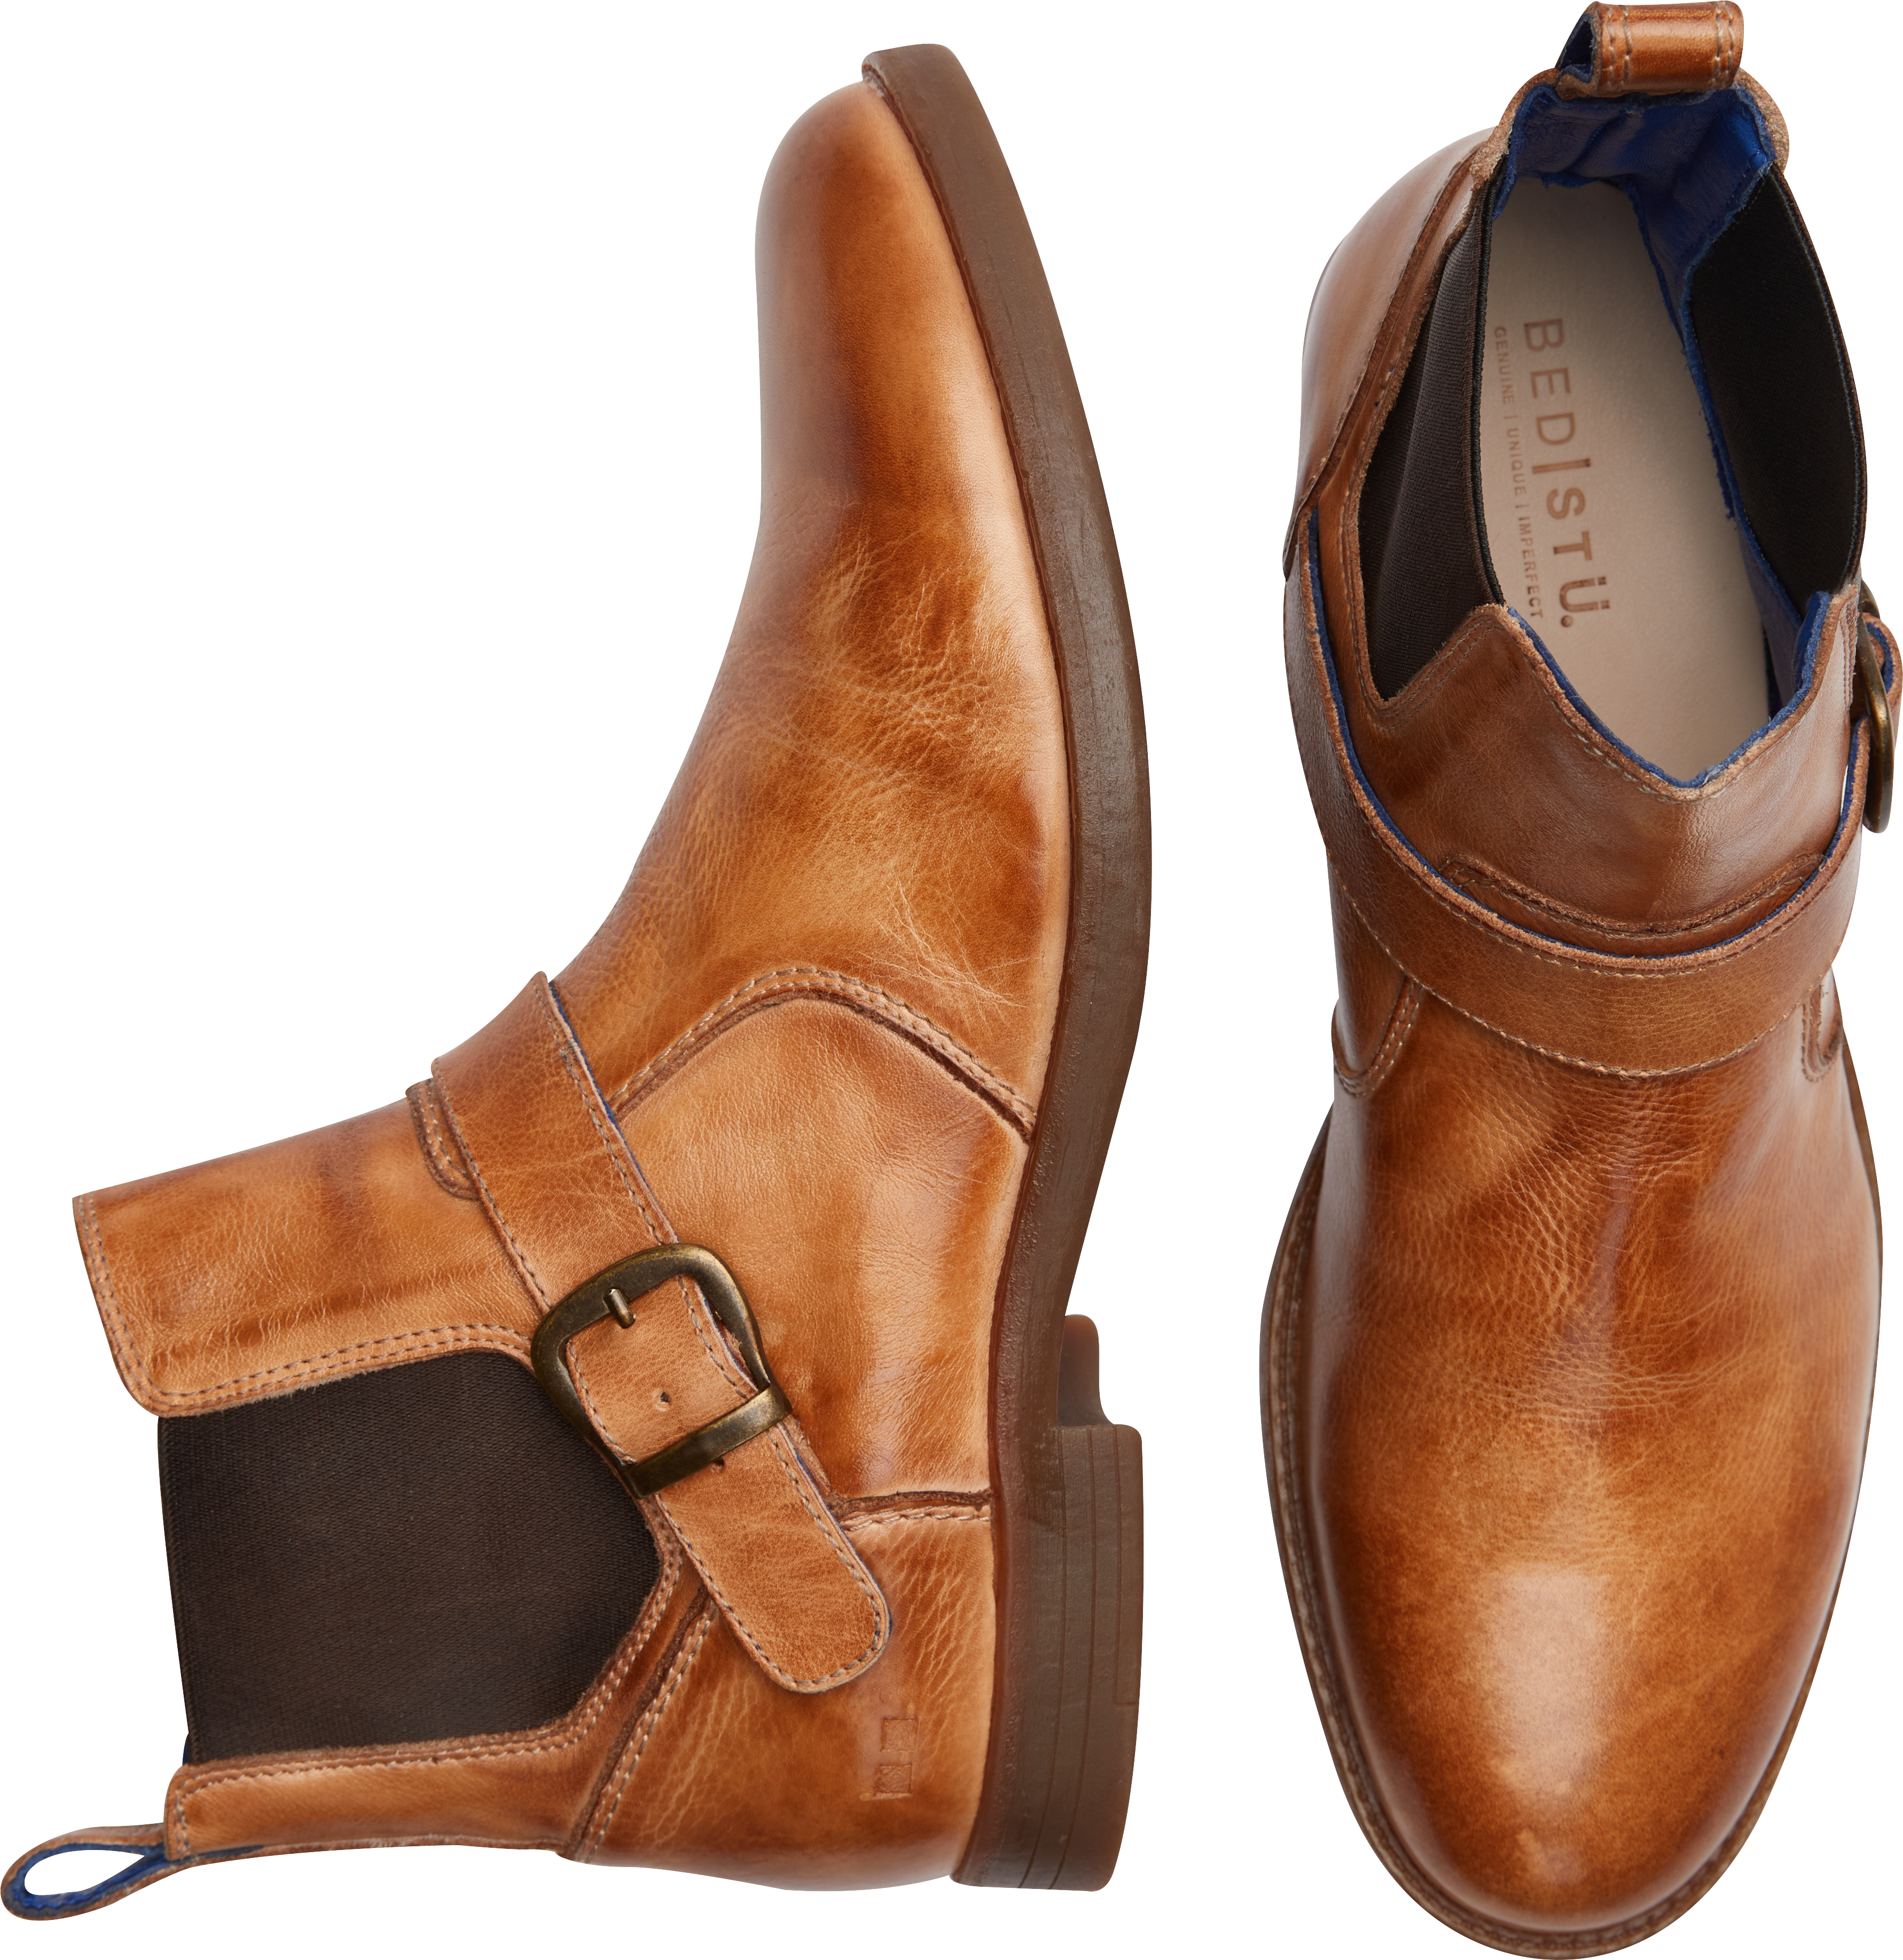 Bed Stu Michelangelo Plain Toe Boots, - Men's Shoes | Men's Wearhouse